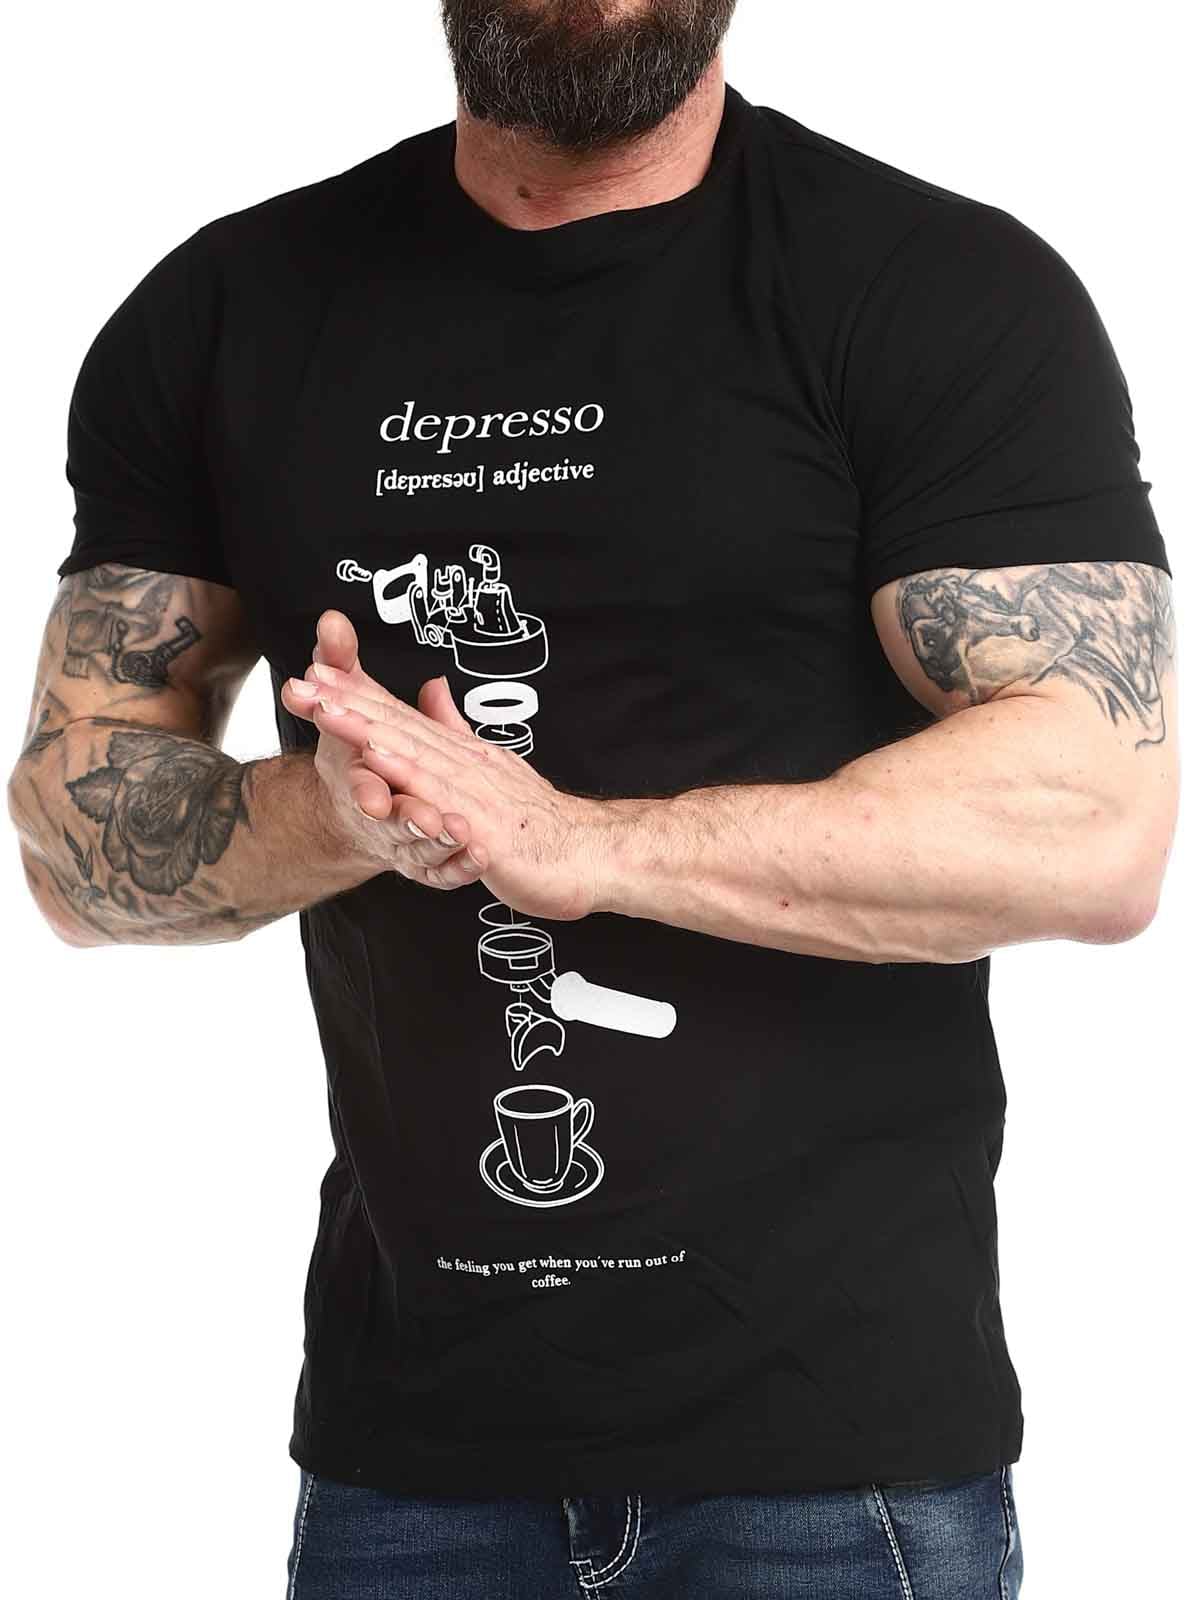 Depresso-Tshirt_4.jpg